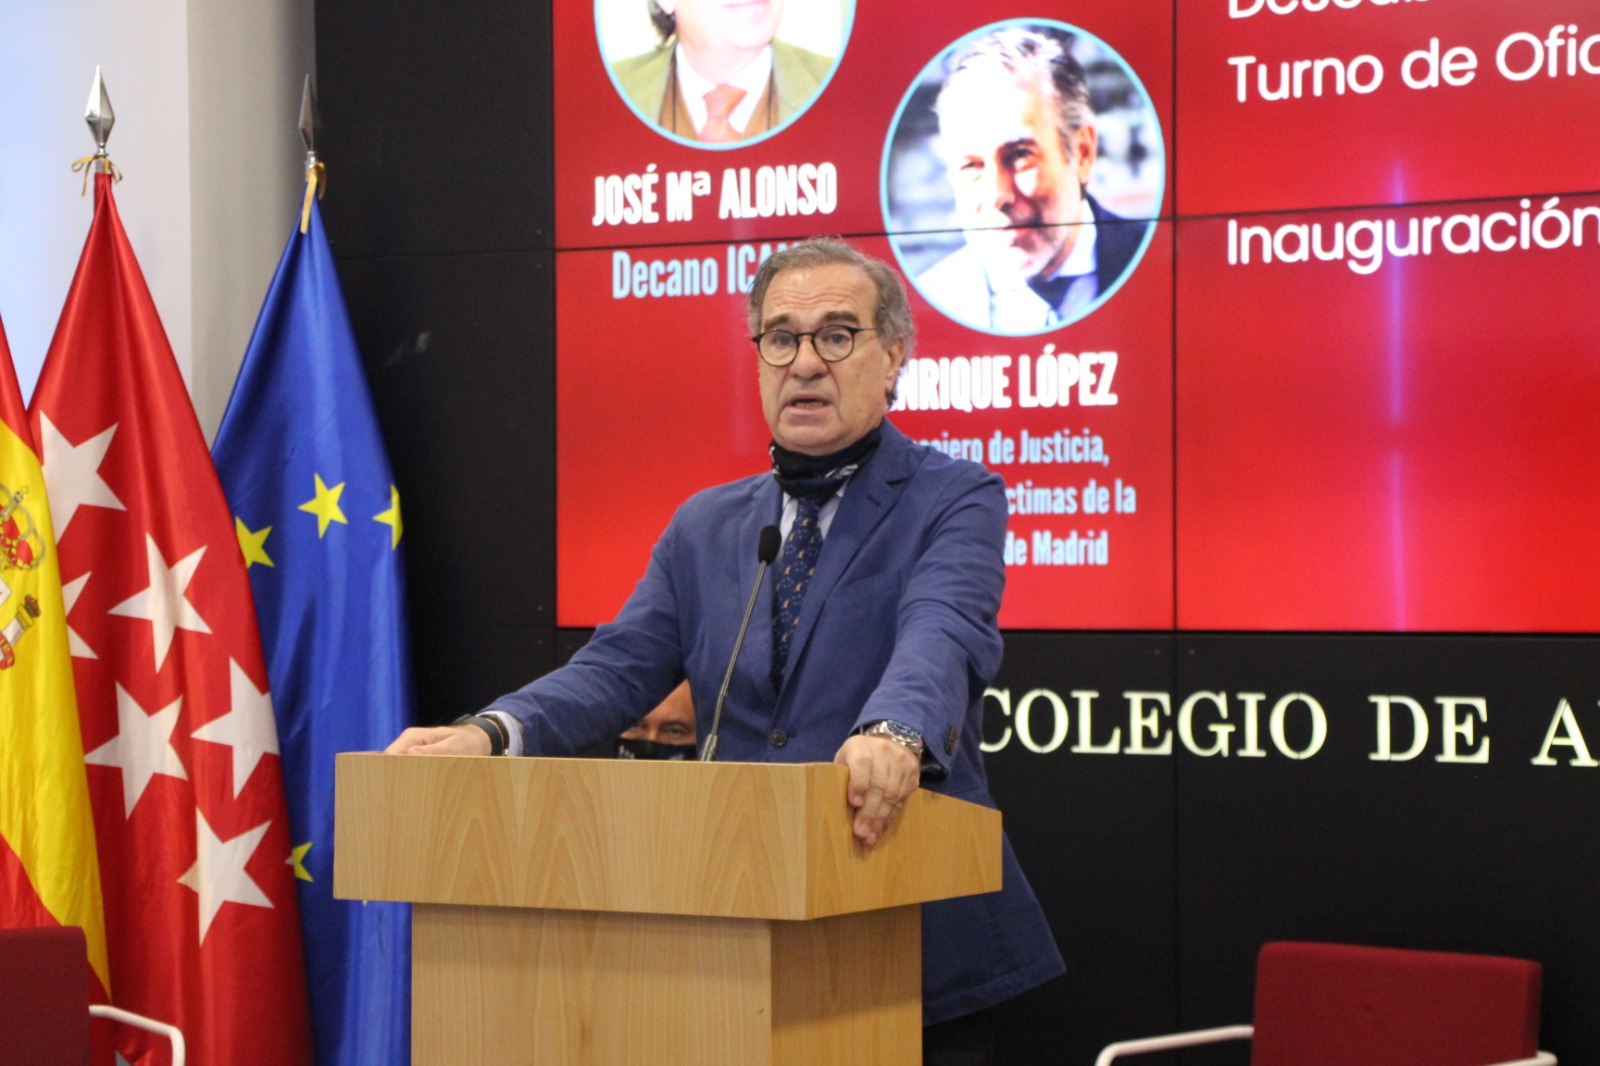 Discurso inaugural del Decano José María Alonso en el X Día de la Justicia Gratuita (3)